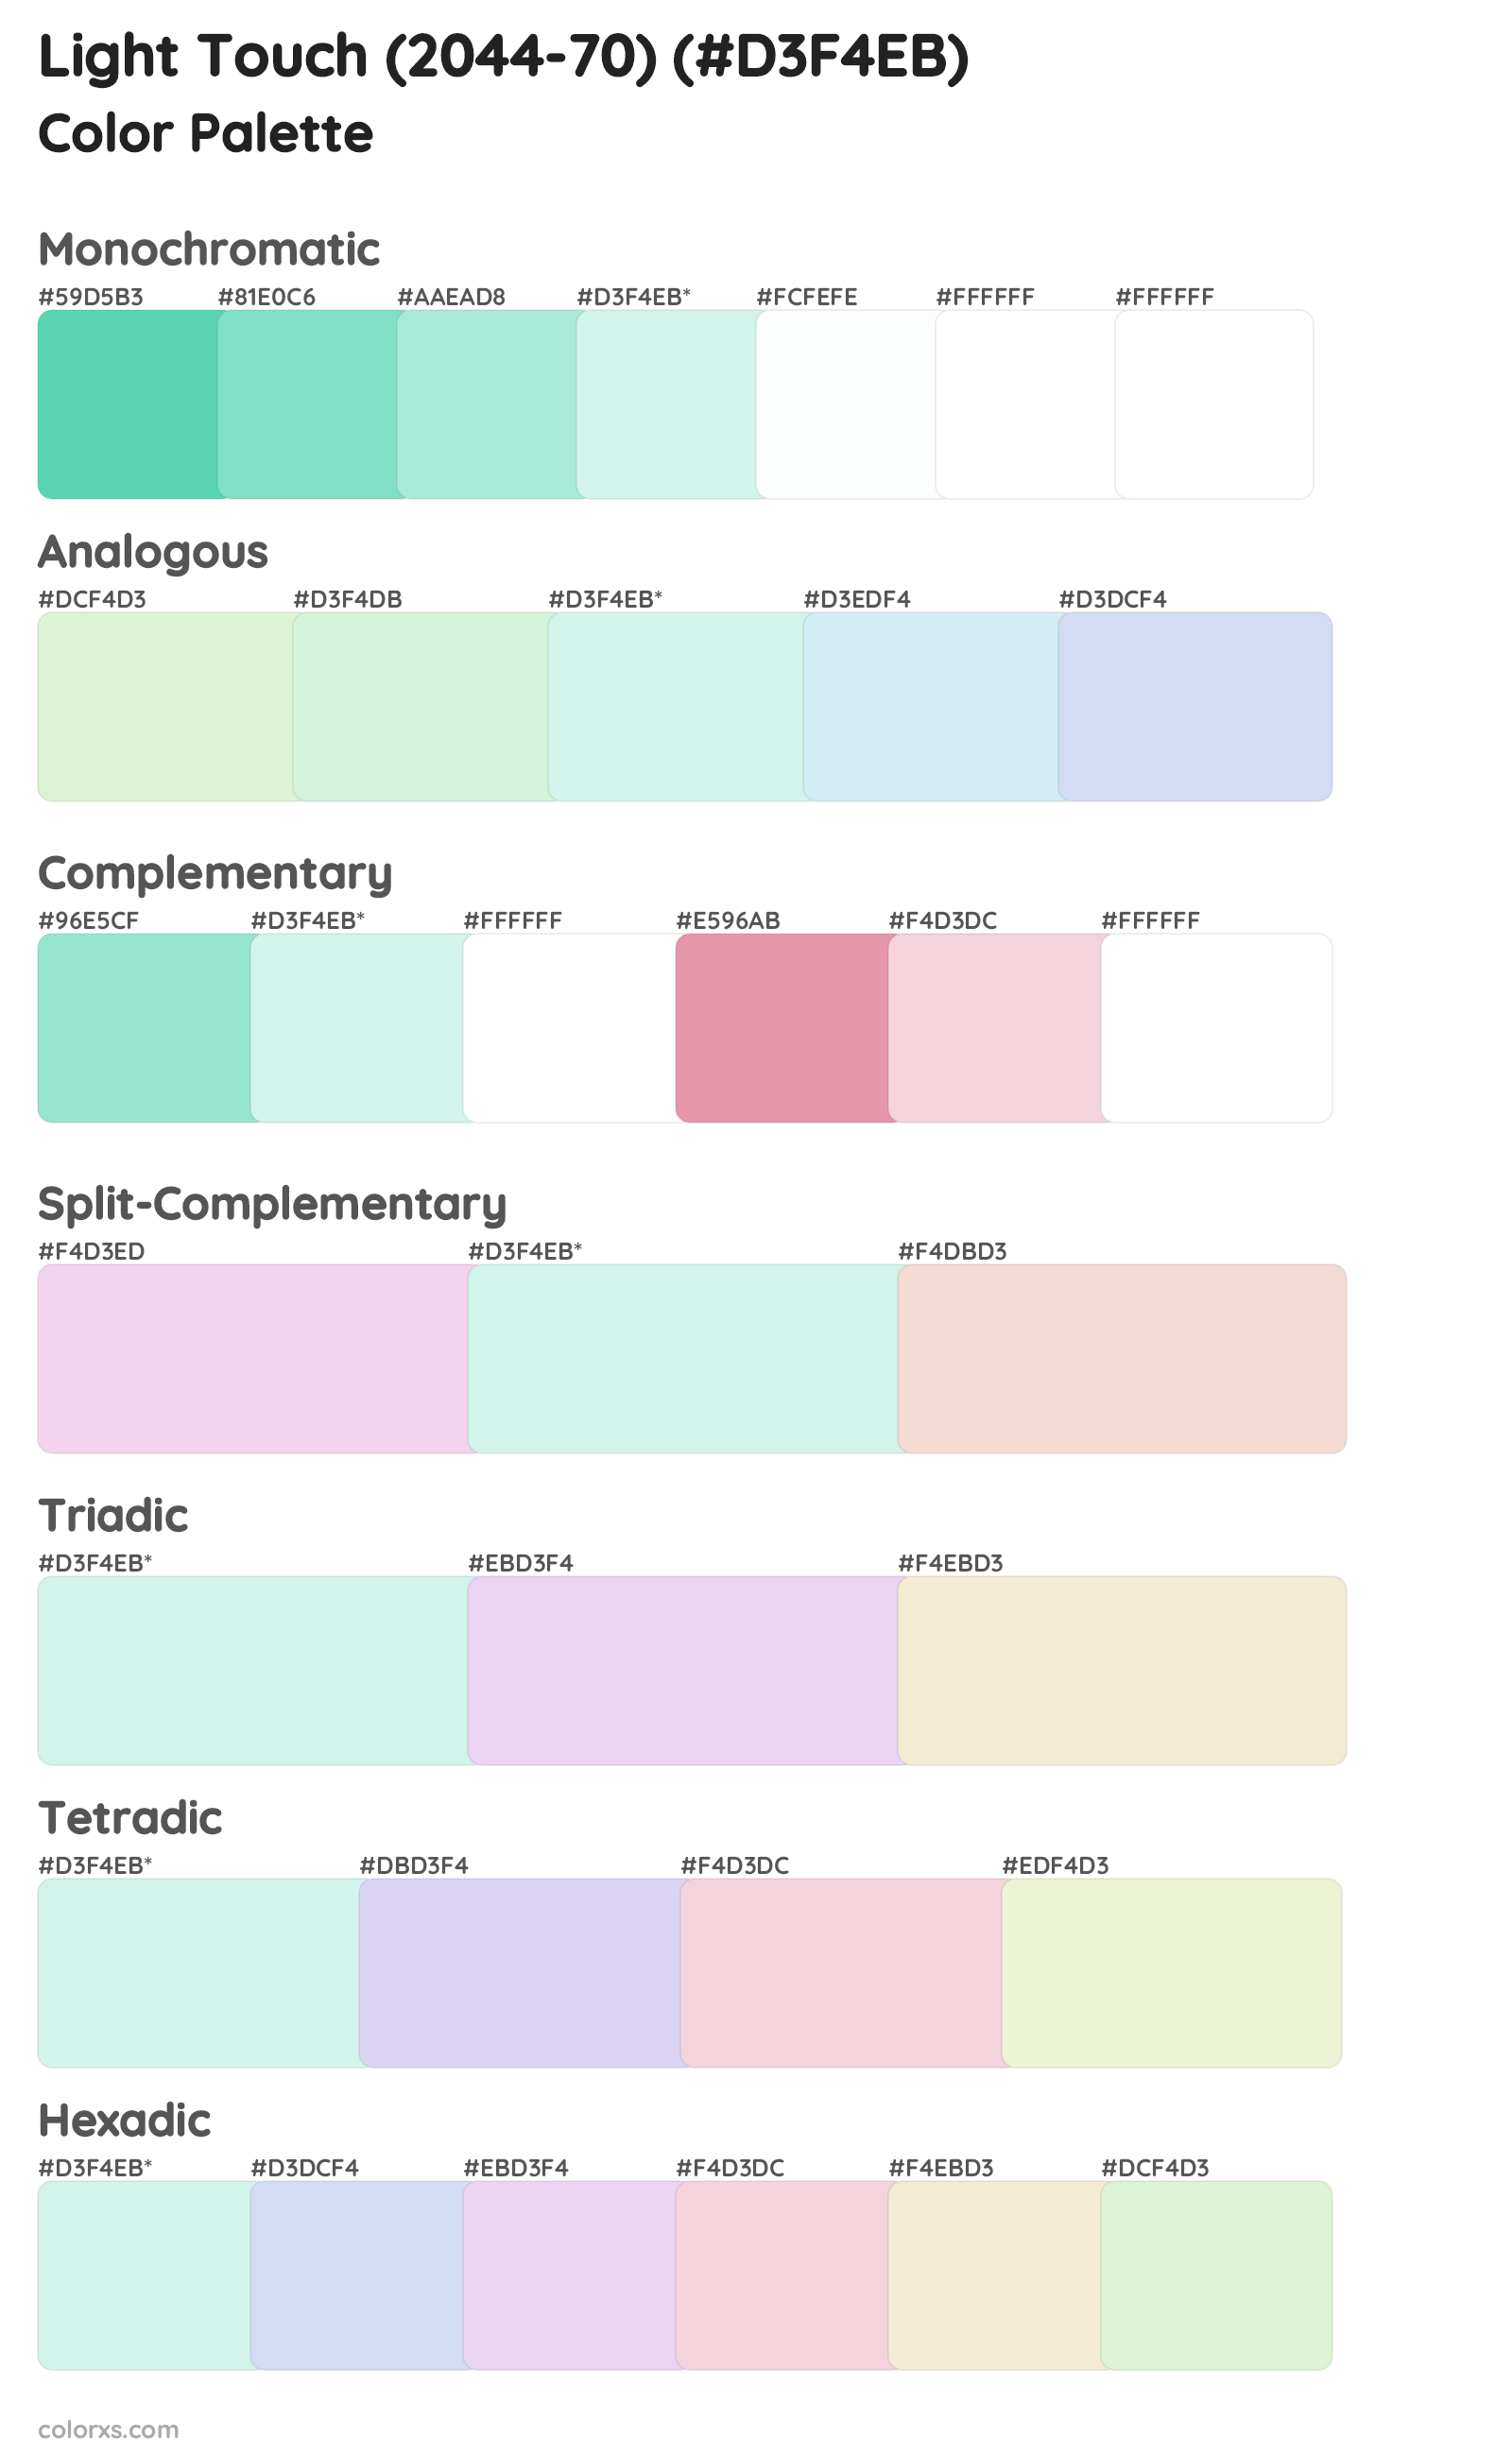 Light Touch (2044-70) Color Scheme Palettes